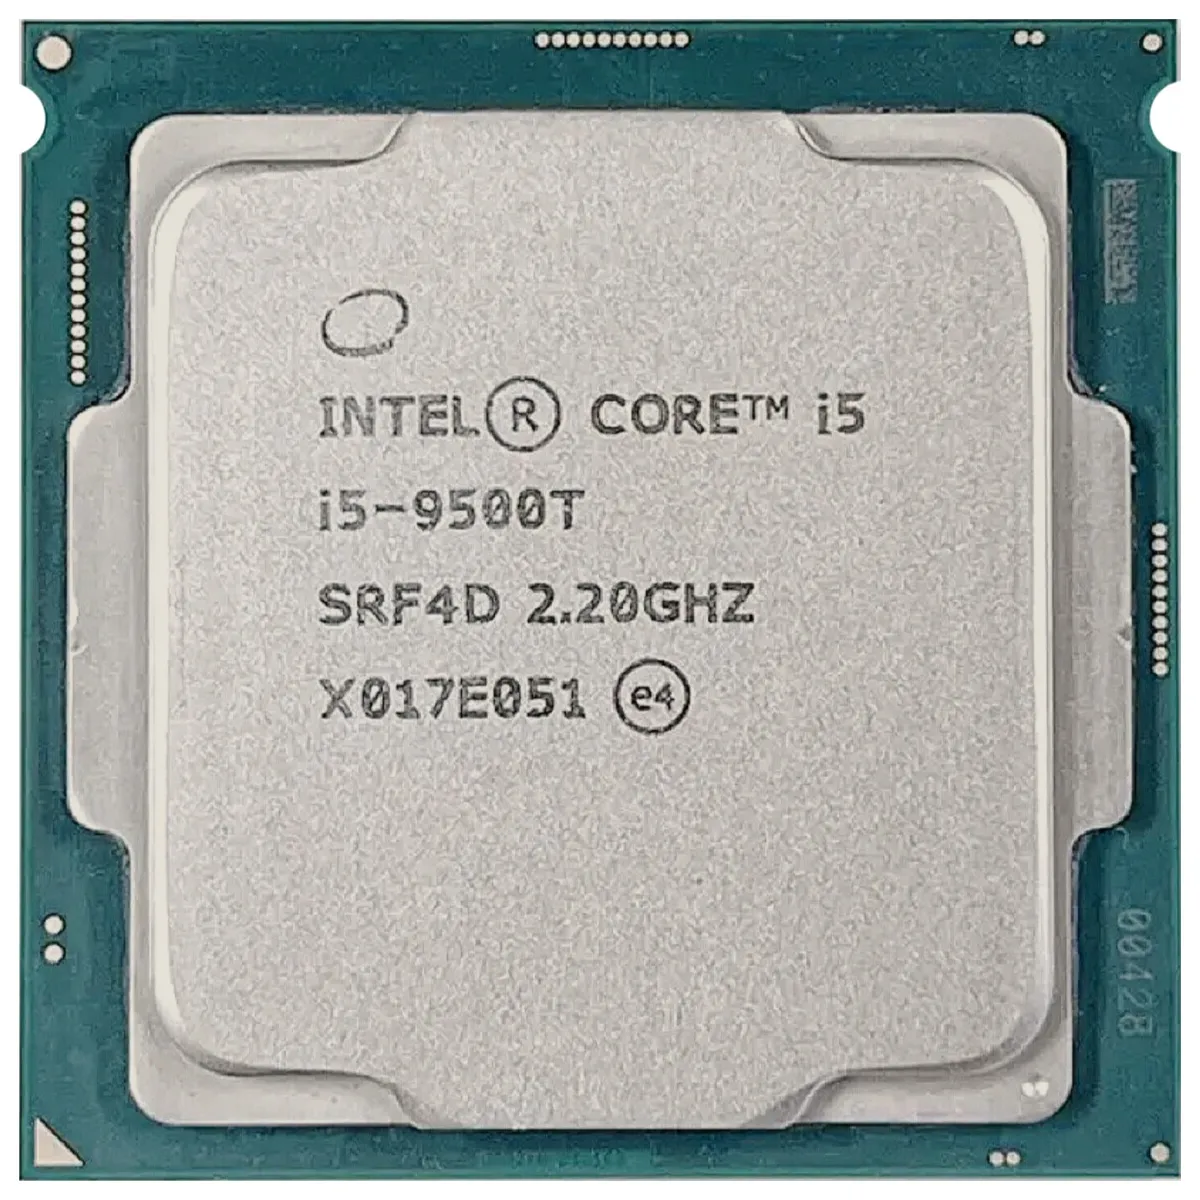 Intel Core i5-9500T (SRF4D) - 6-Core 2.20GHz LGA1151 9MB 25W CPU